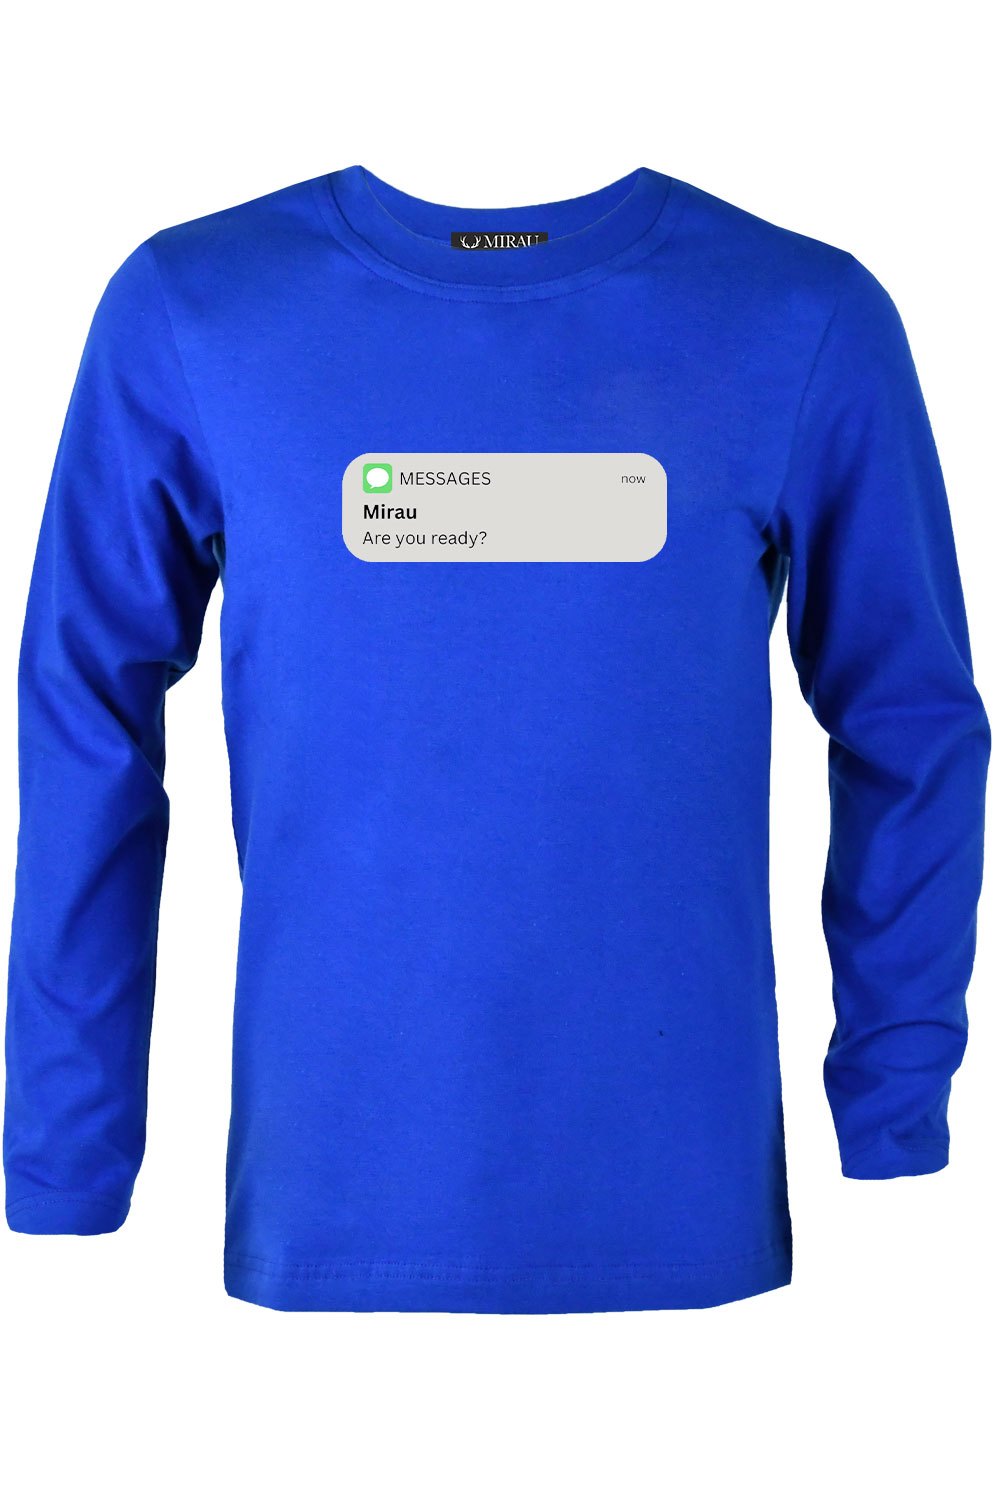 Tričko - SMS (výpredaj)